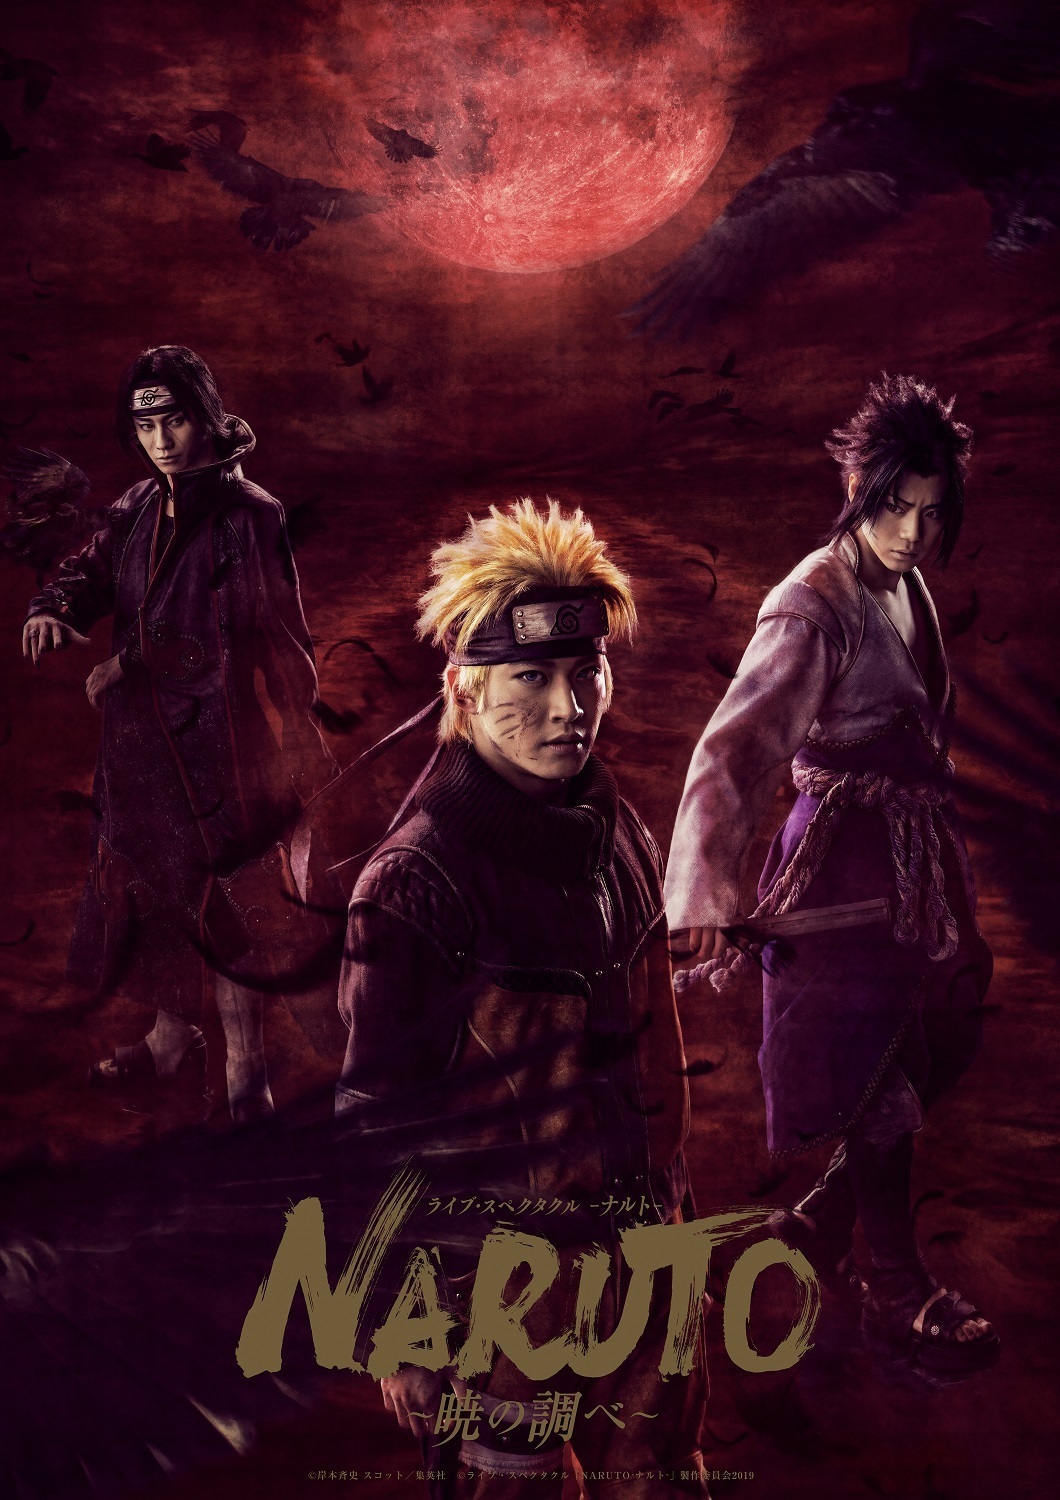 週刊少年ジャンプ Naruto ナルト 周年記念 Naruto To Boruto The Live 19 10月5日 土 6日 日 に幕張メッセ イベントホールにて開催 Naruto To Boruto The Live 19実行委員会のプレスリリース